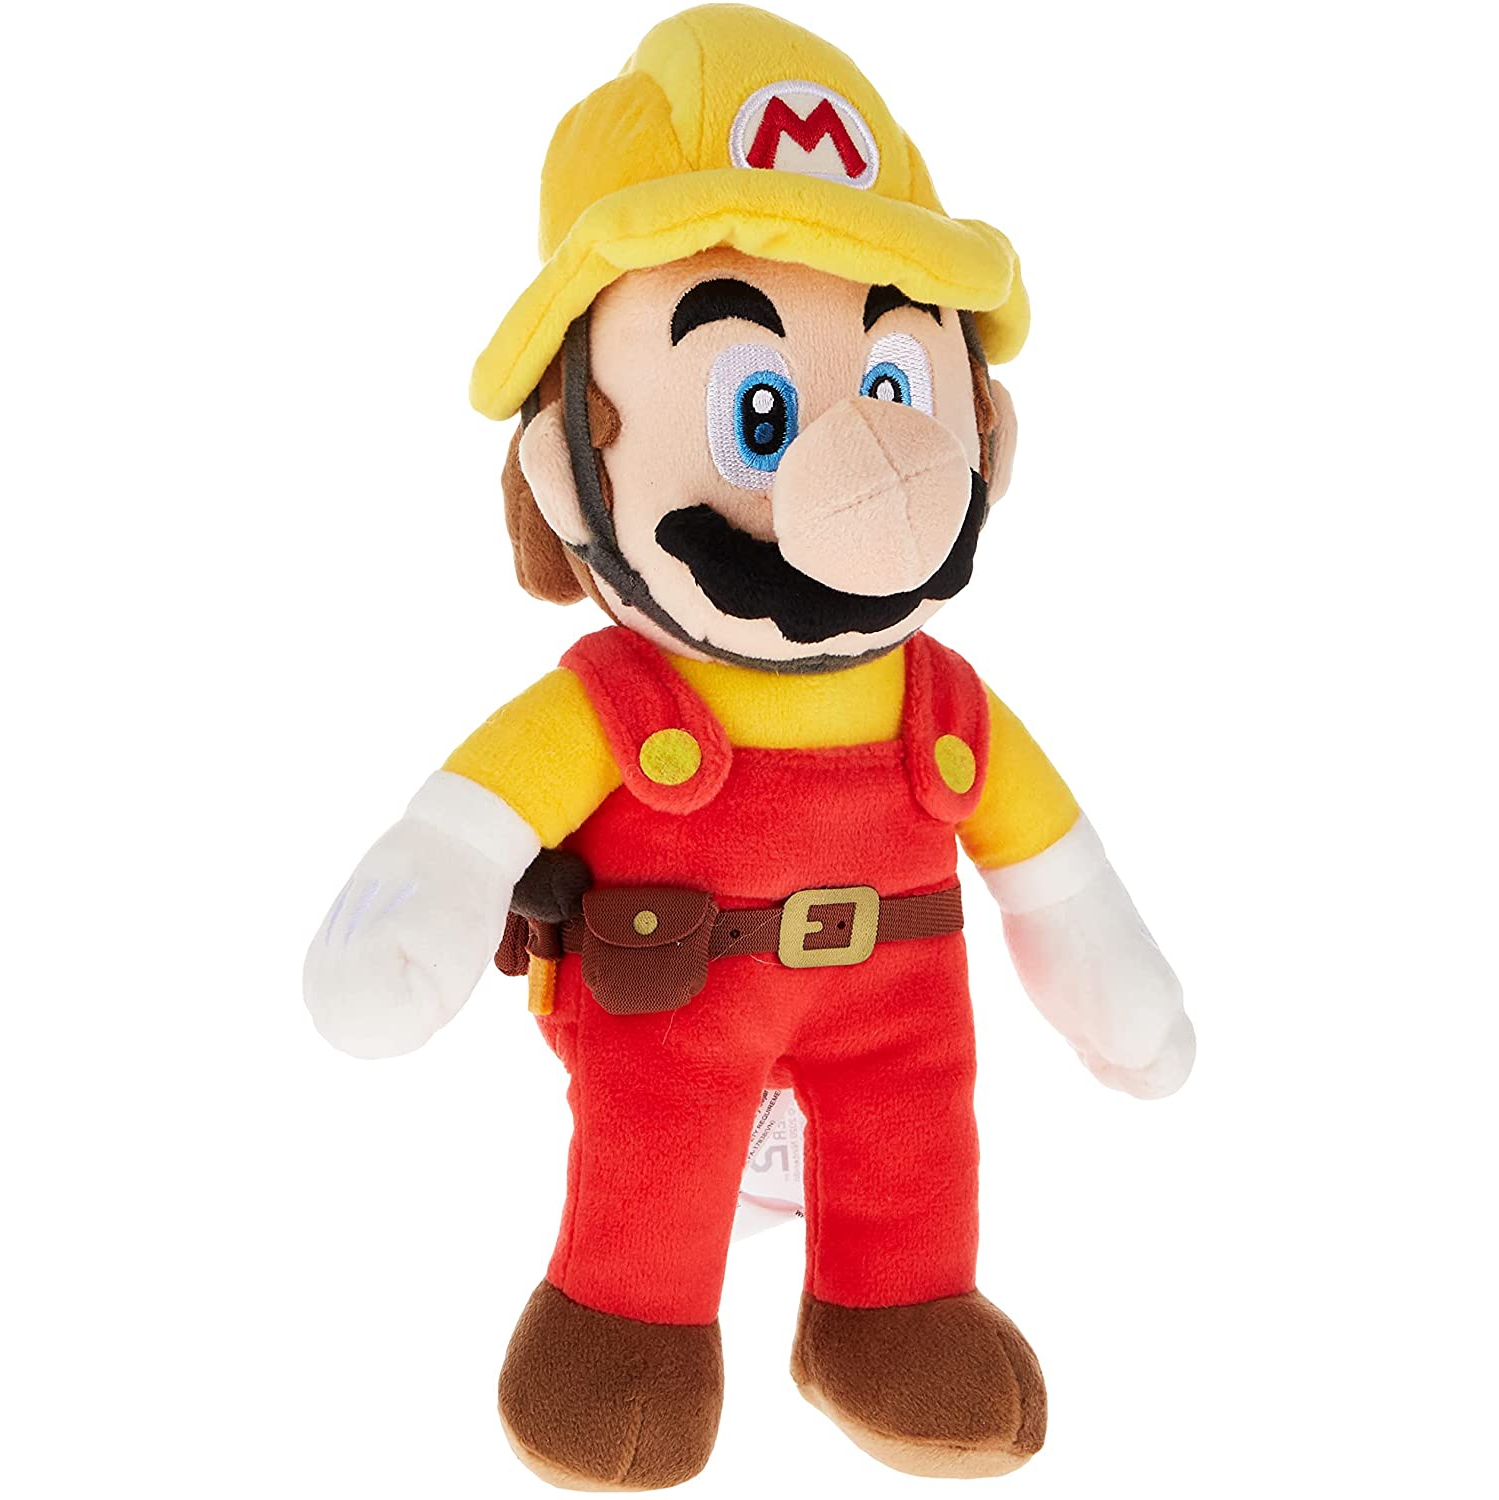 Super Mario Maker 2 - Builder Mario Plush, 9.5"